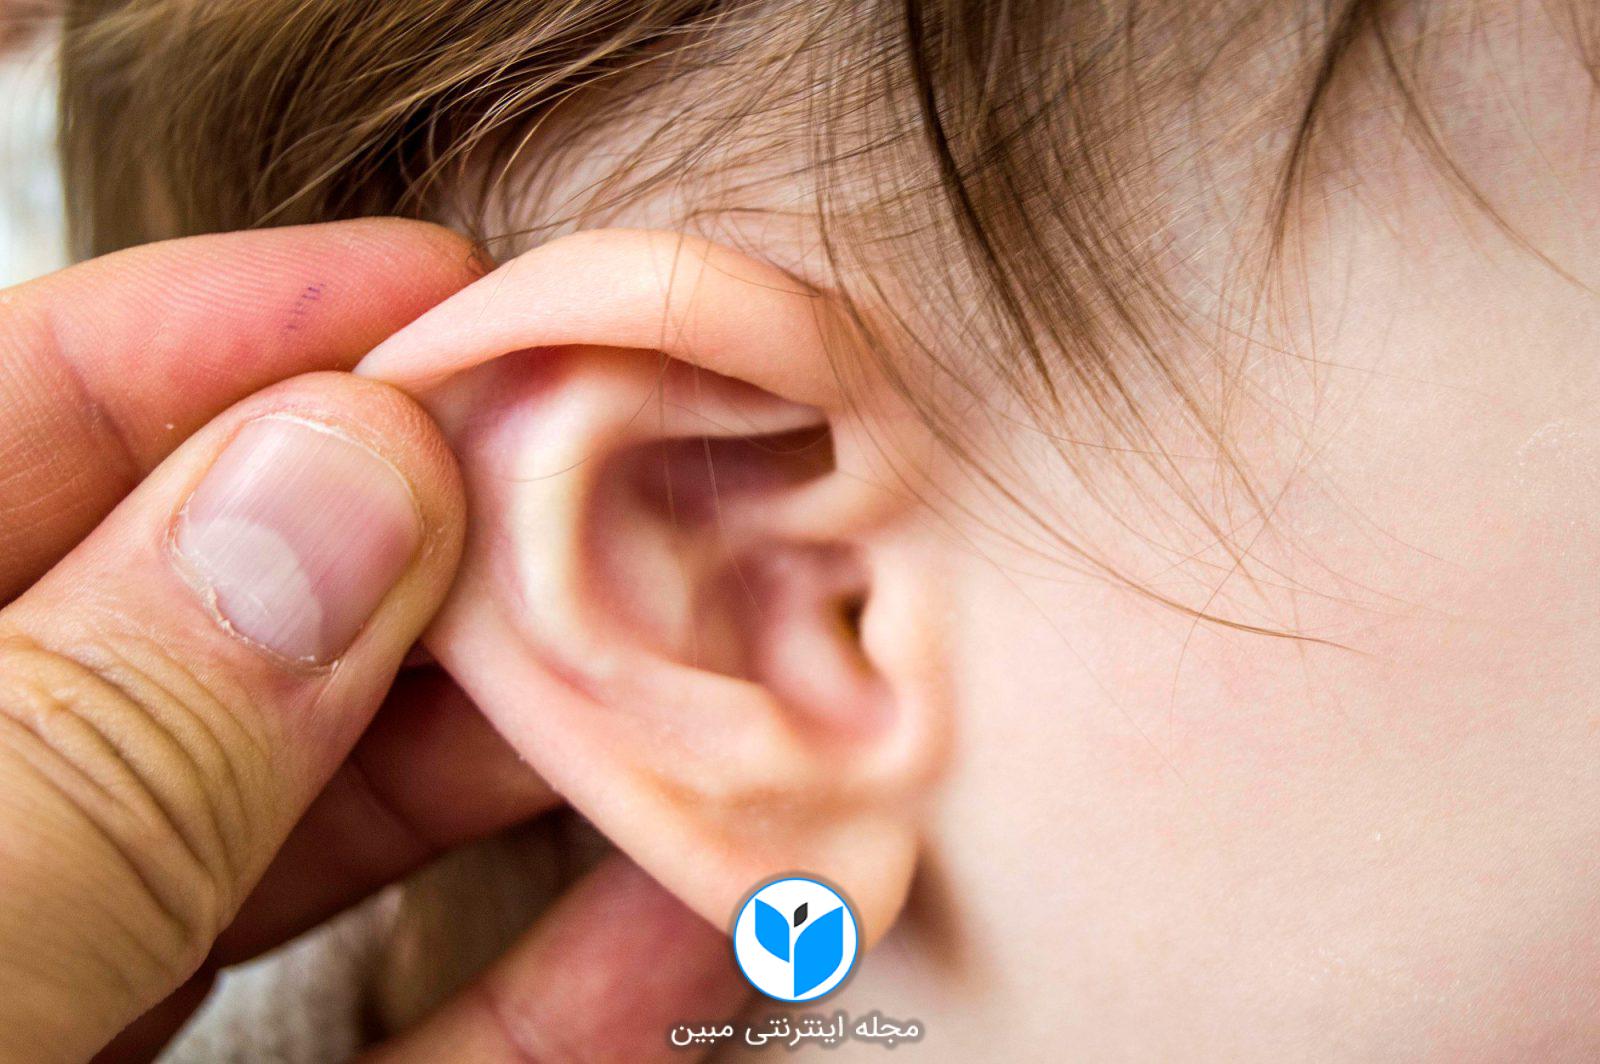 6 نشانه عفونت گوش و راههای پیشگیری از آن